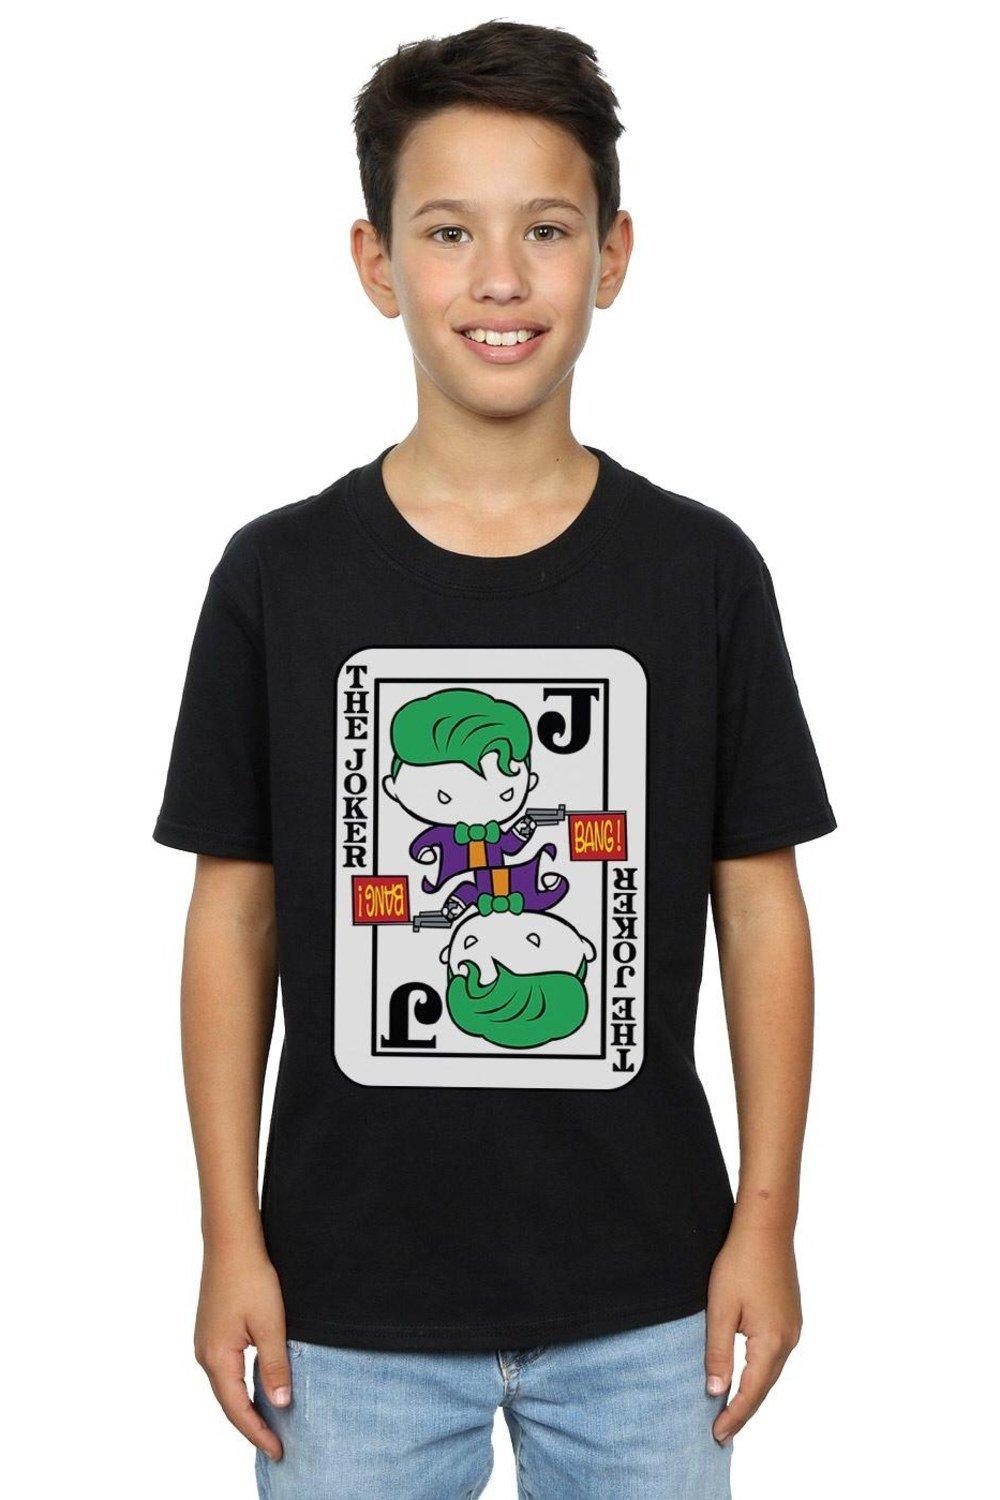 Chibi Joker Playing Card T-Shirt